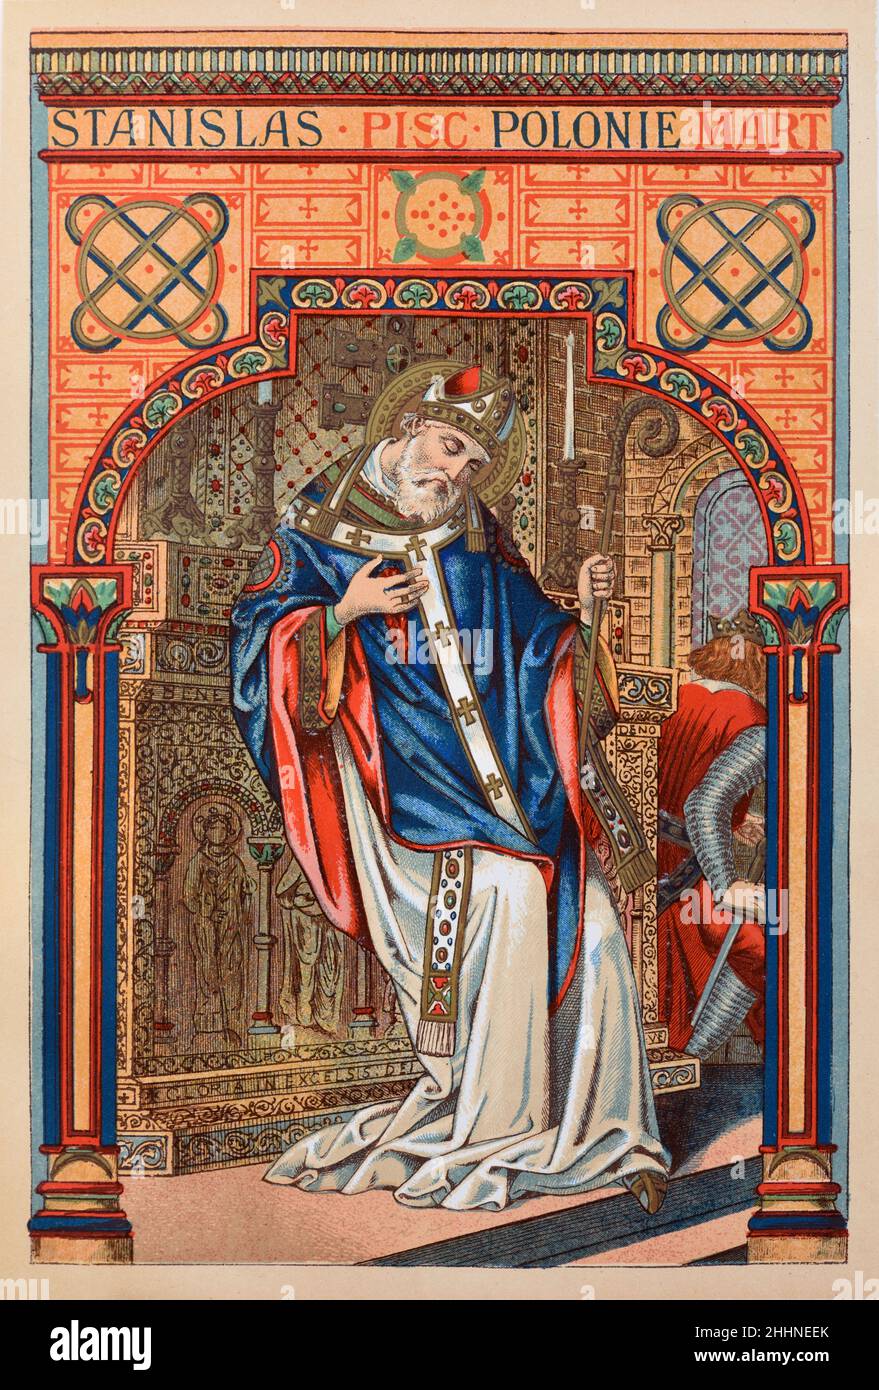 St. Stanislaus von Szczepanow (1030-1079) Polnischer Bischof von Krakau Polen. Chromolithographie von 1887 Edition von Butlers Leben der Heiligen. Stockfoto